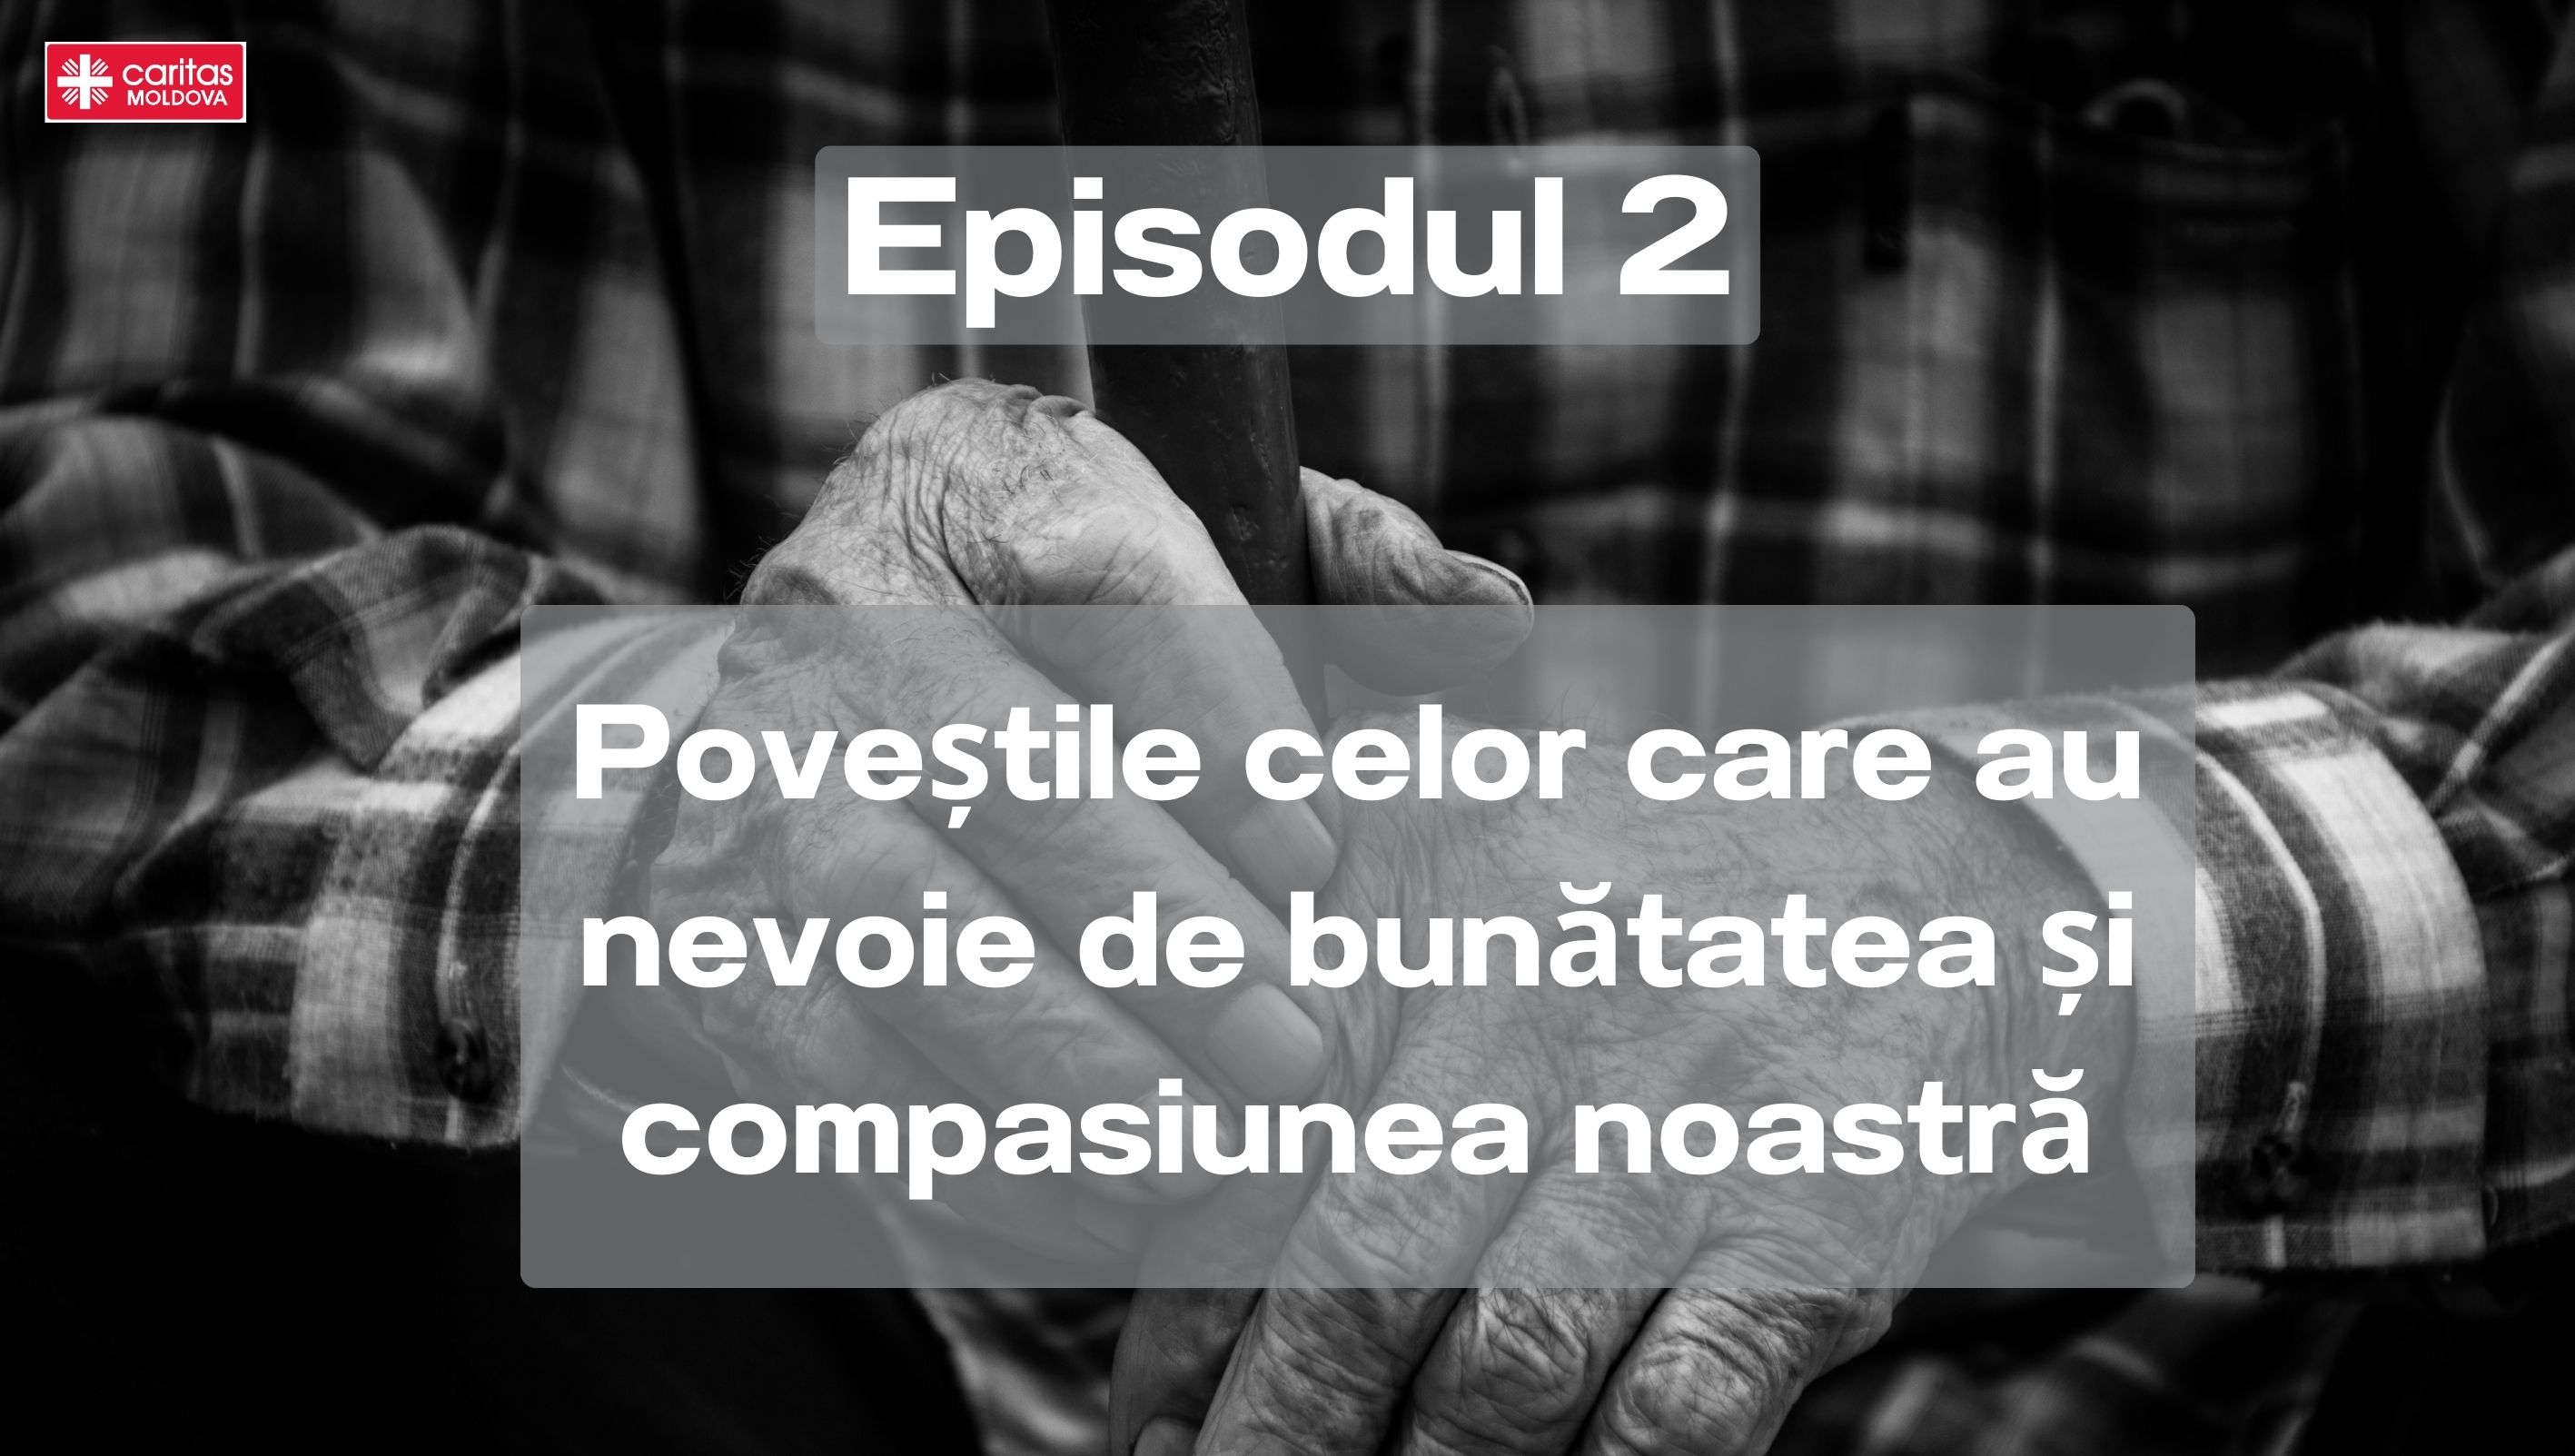 EPISODUL 2: Poveștile celor care au nevoie de bunătatea și compasiunea noastră